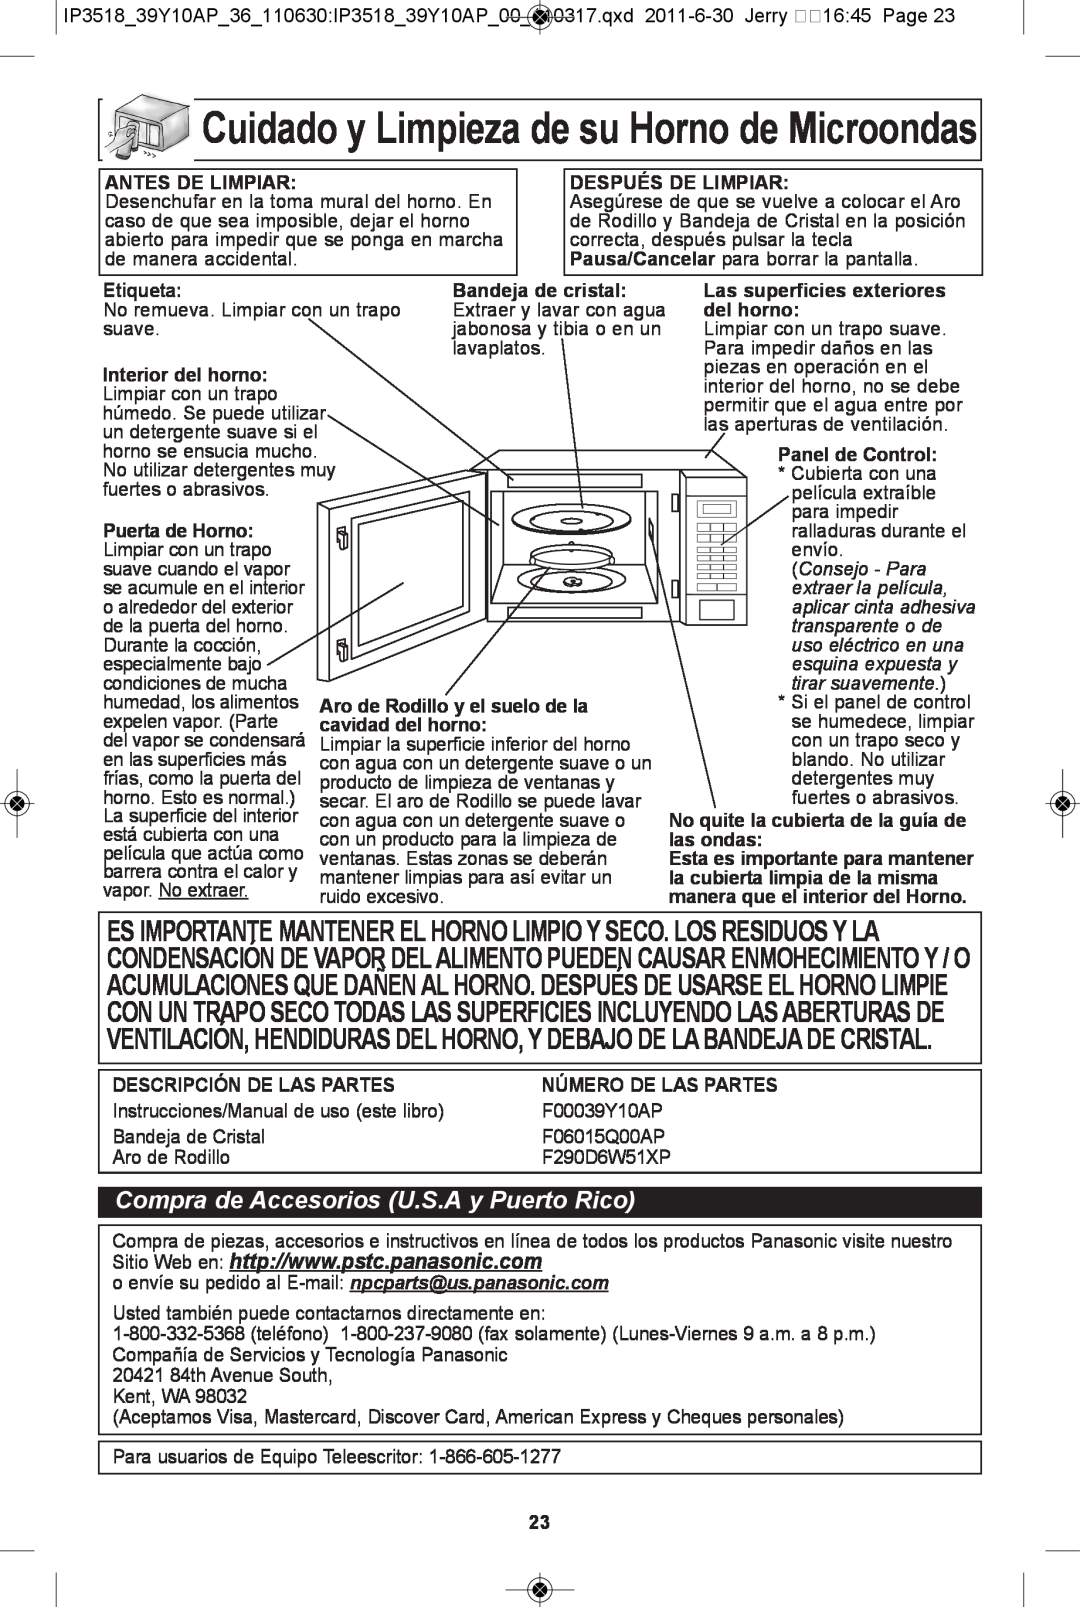 Panasonic NN-SA651S cuidado y limpieza de su horno de Microondas, Compra de Accesorios U.S.A y Puerto Rico, Consejo - Para 